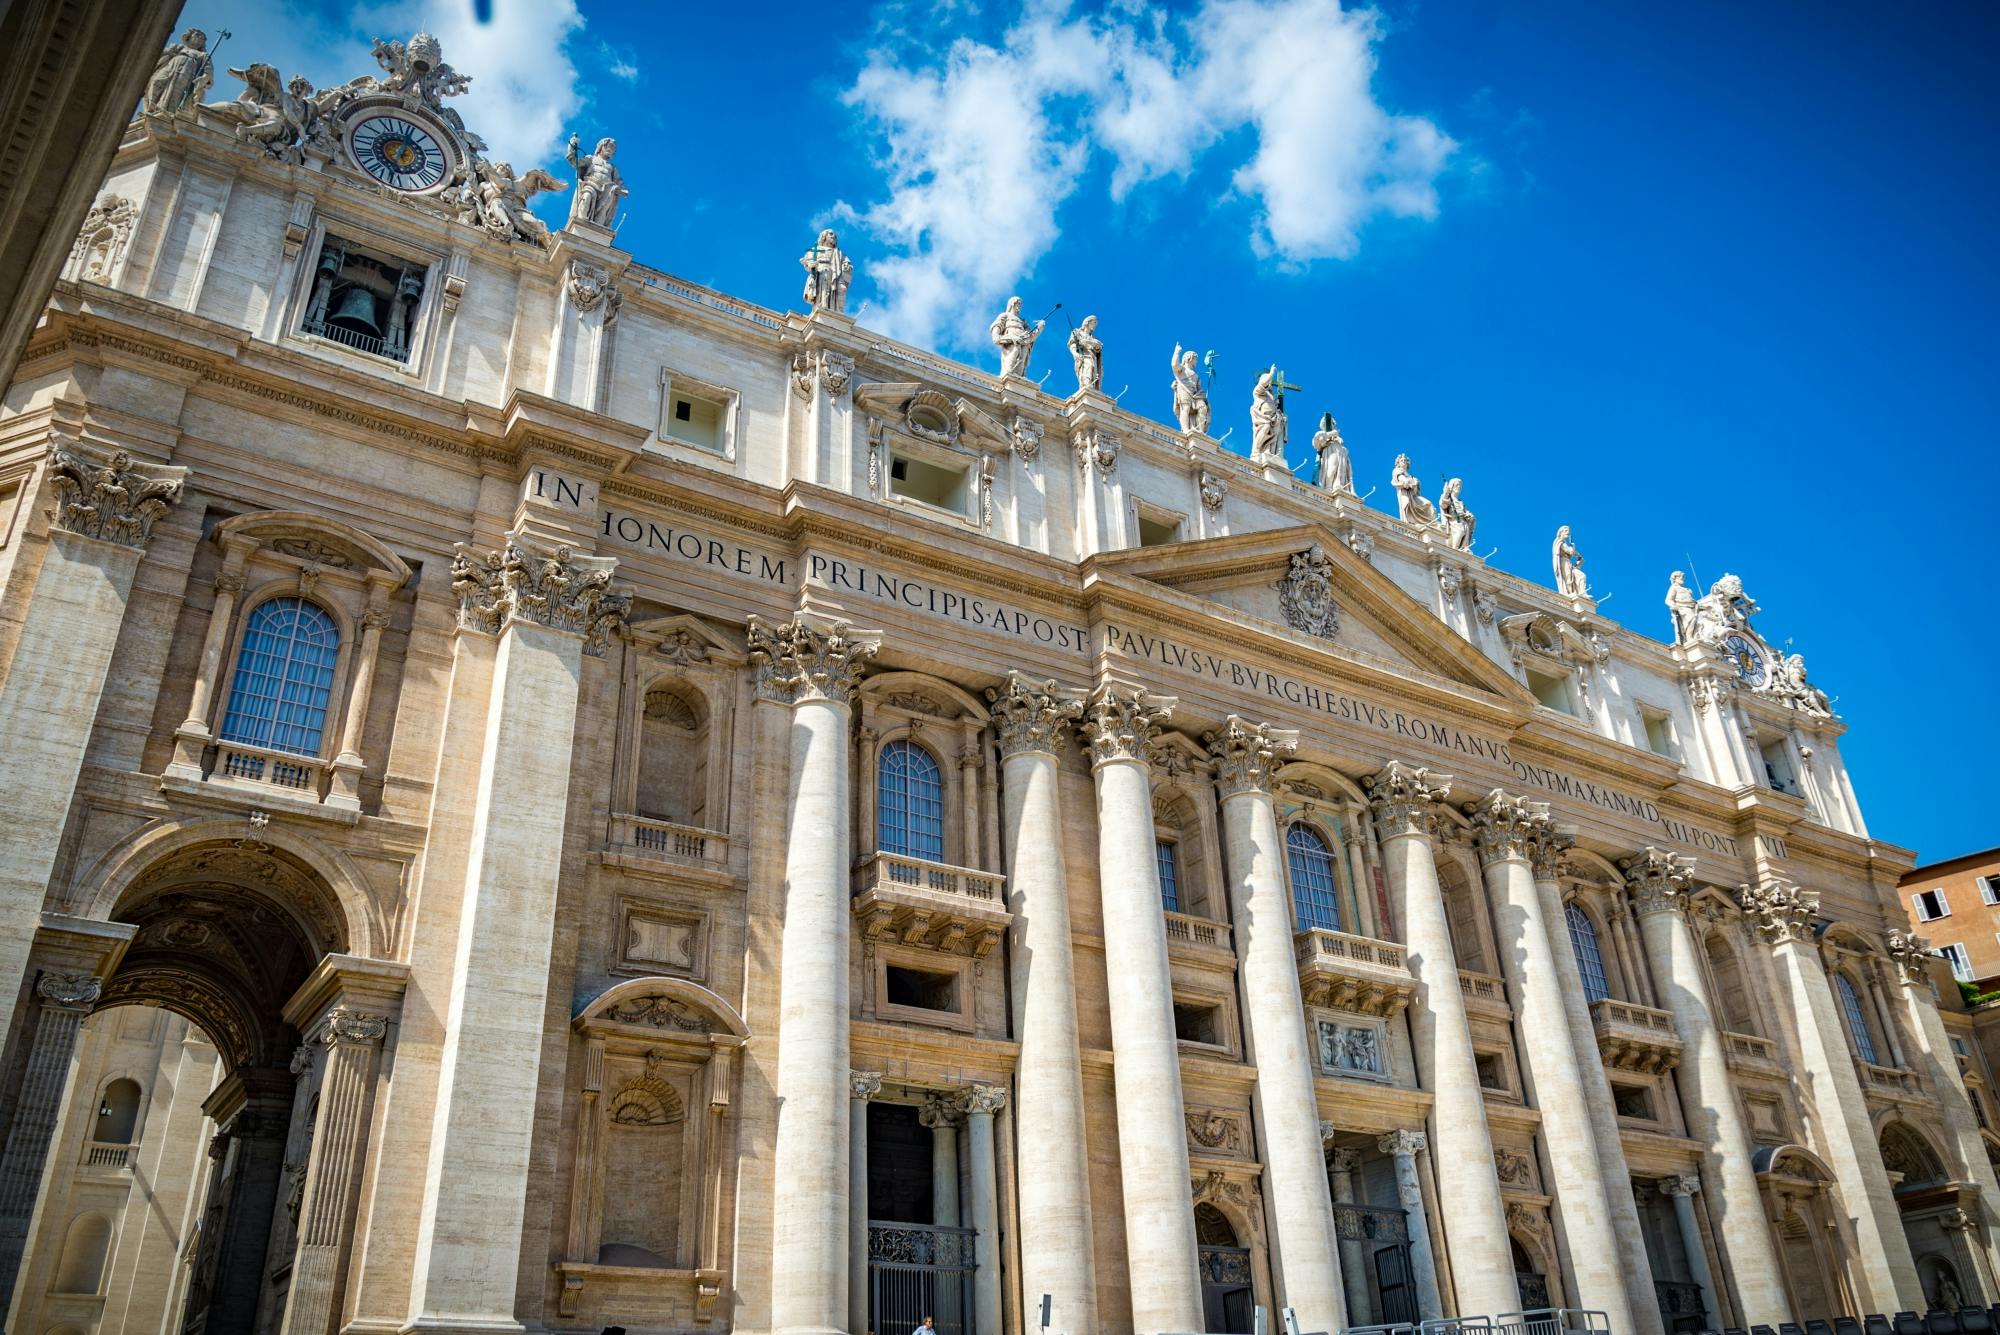 OMNIA Pass Vaticano e Roma 72 ore con trasporto